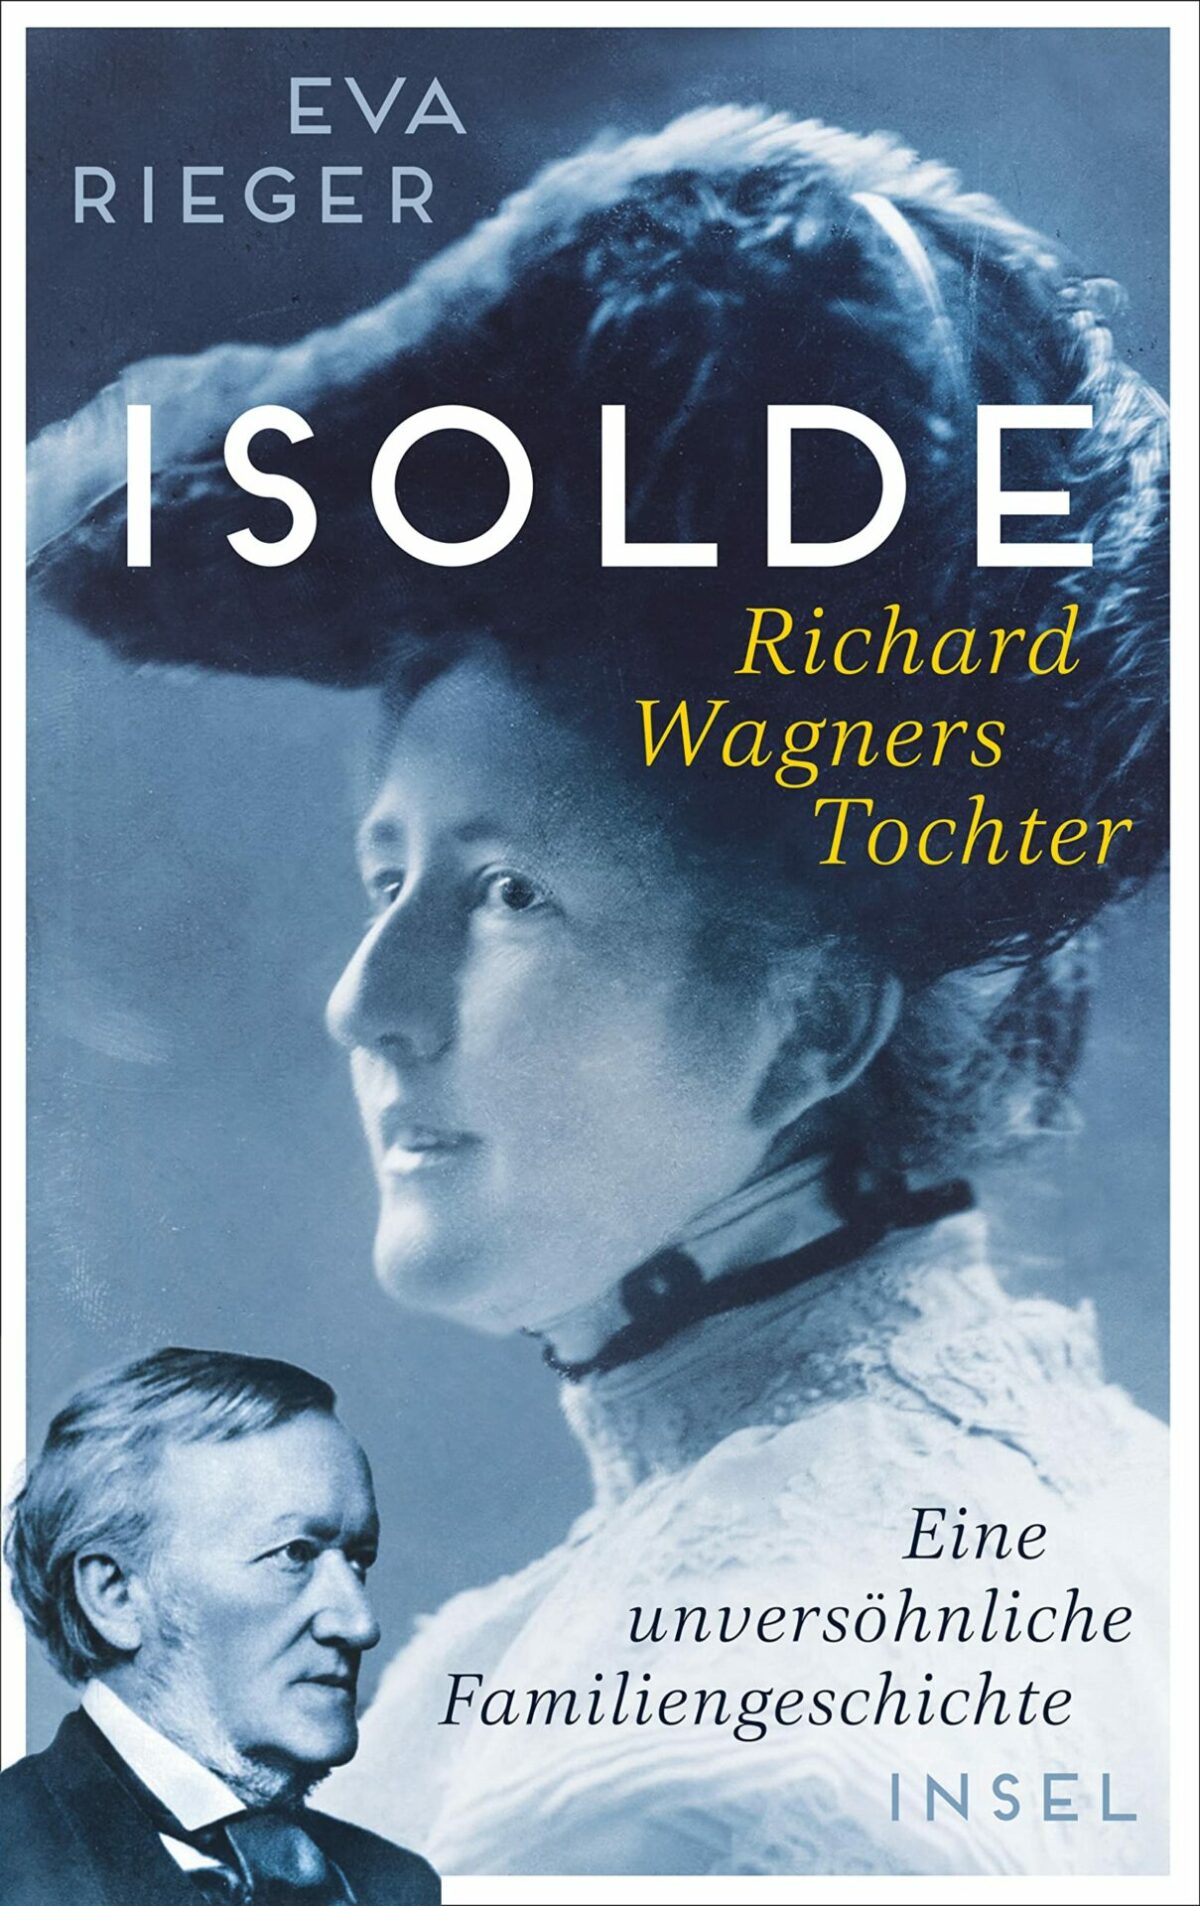 Buch-Rezension: Eva Rieger, Isolde, Wagners Tochter  Klassik-begeistert.de